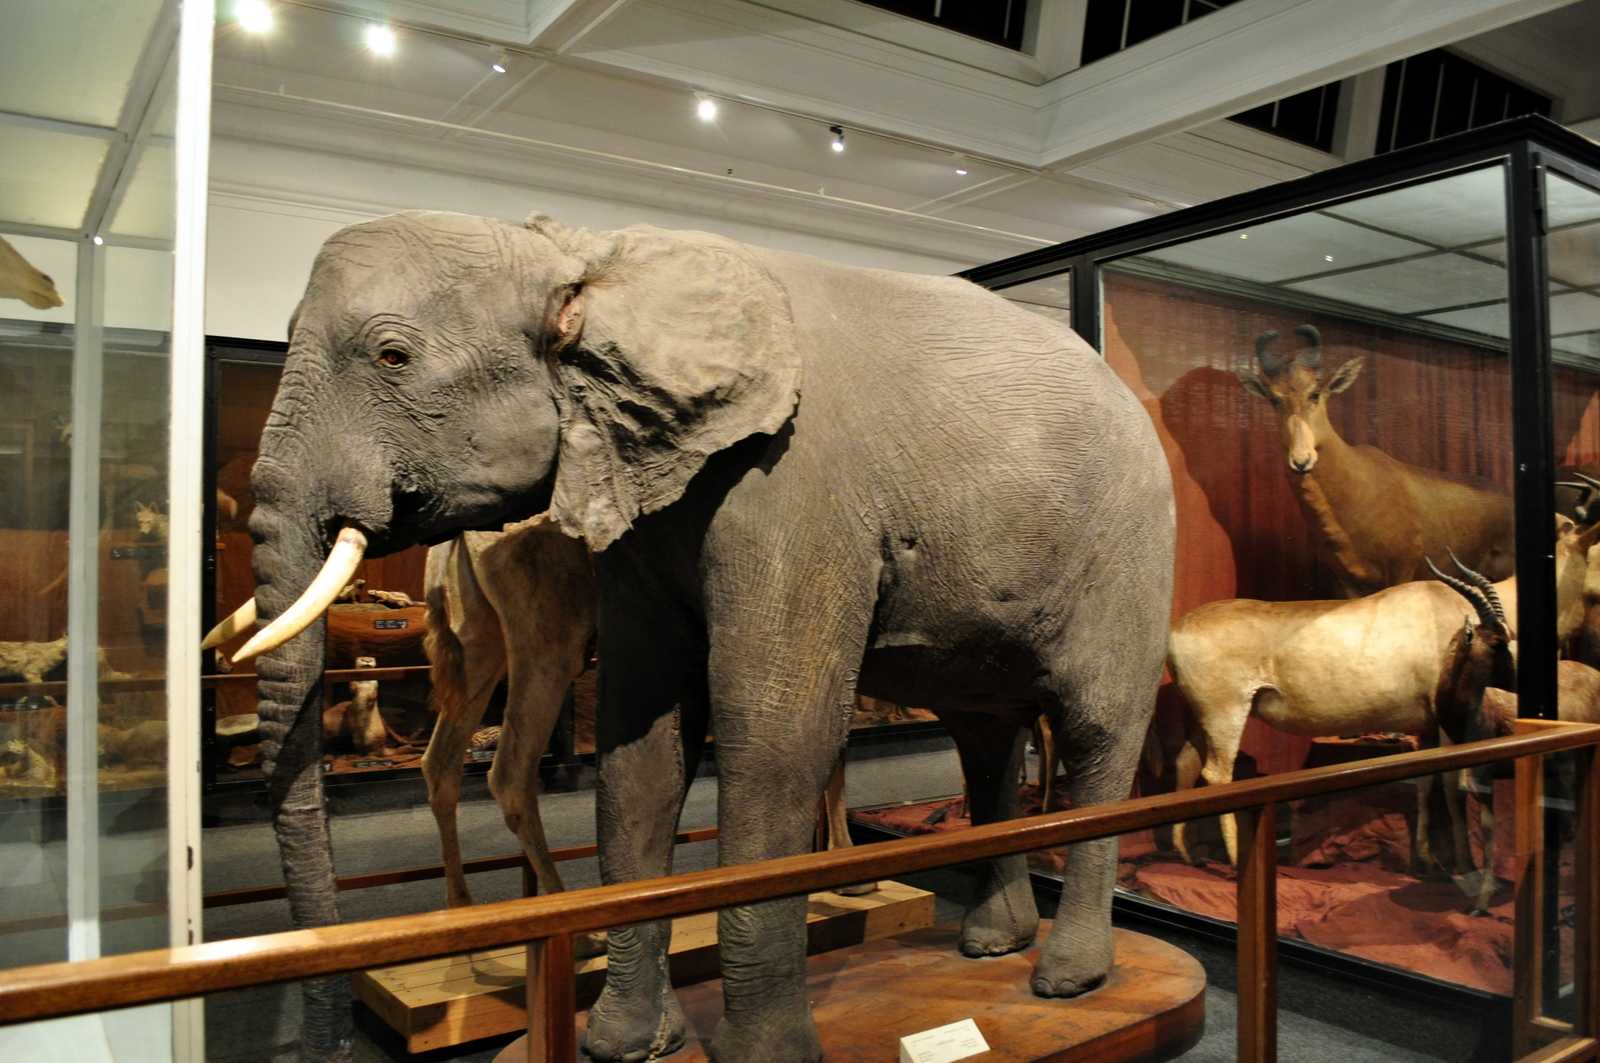 Животные зоологического музея. Национальный музей Кейптаун. Южноафриканский изико-музей. Muzei CEIP taun.